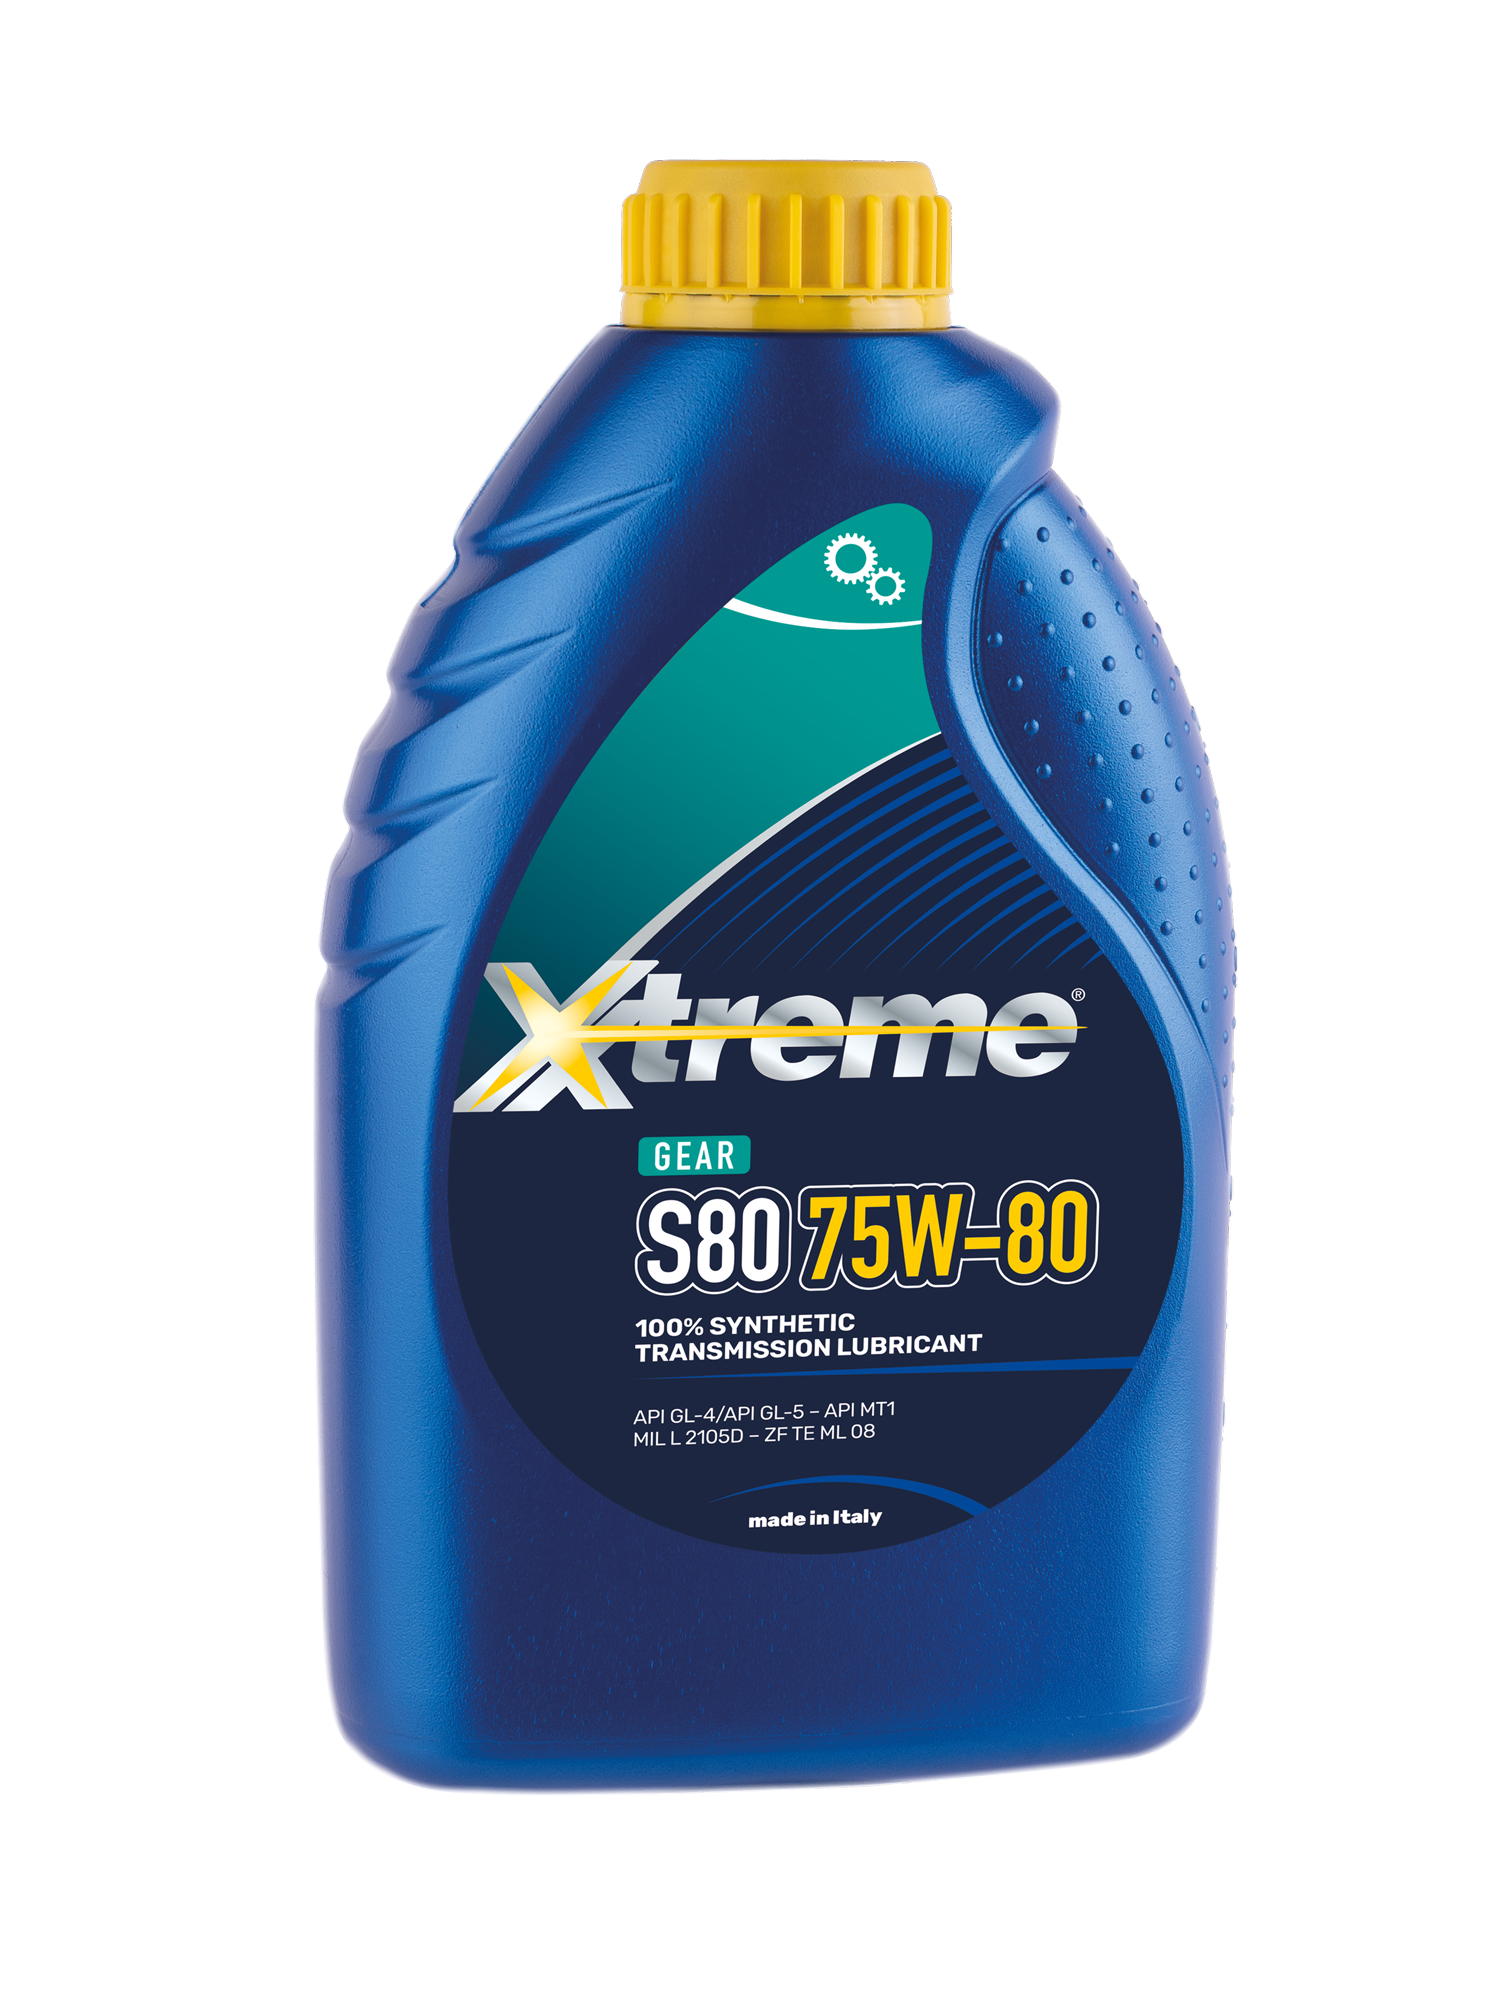 Xtreme GEAR S80 75W80 – Axxonoil